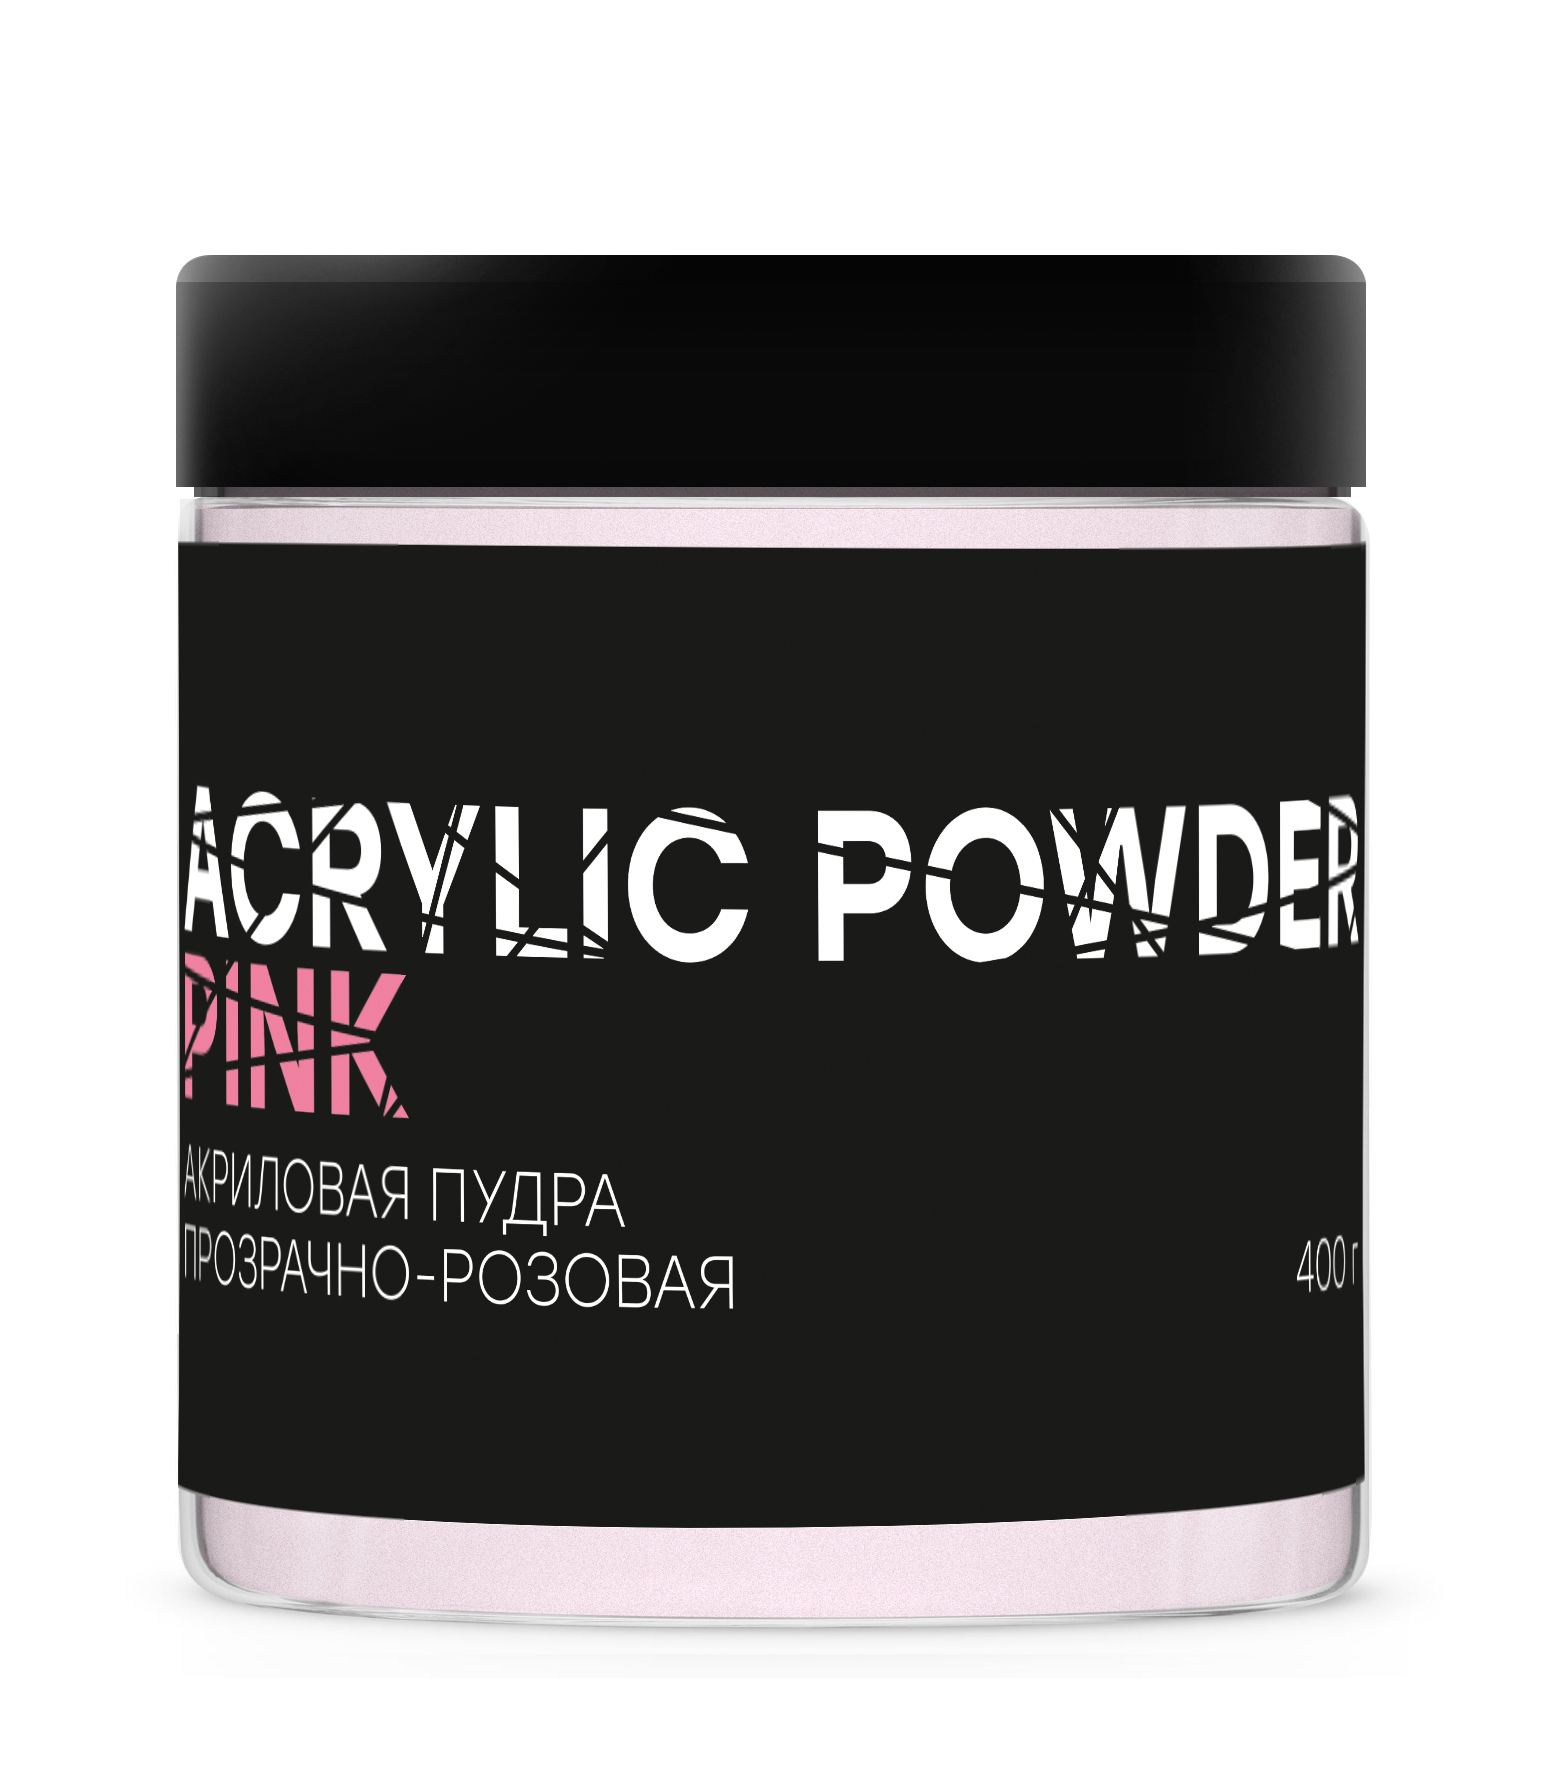 Акриловая пудра InGarden Acrylic Powder Pink прозрачно-розовая, 400 г ezflow акриловая ярко белая пудра truly white acrylic powder 21г